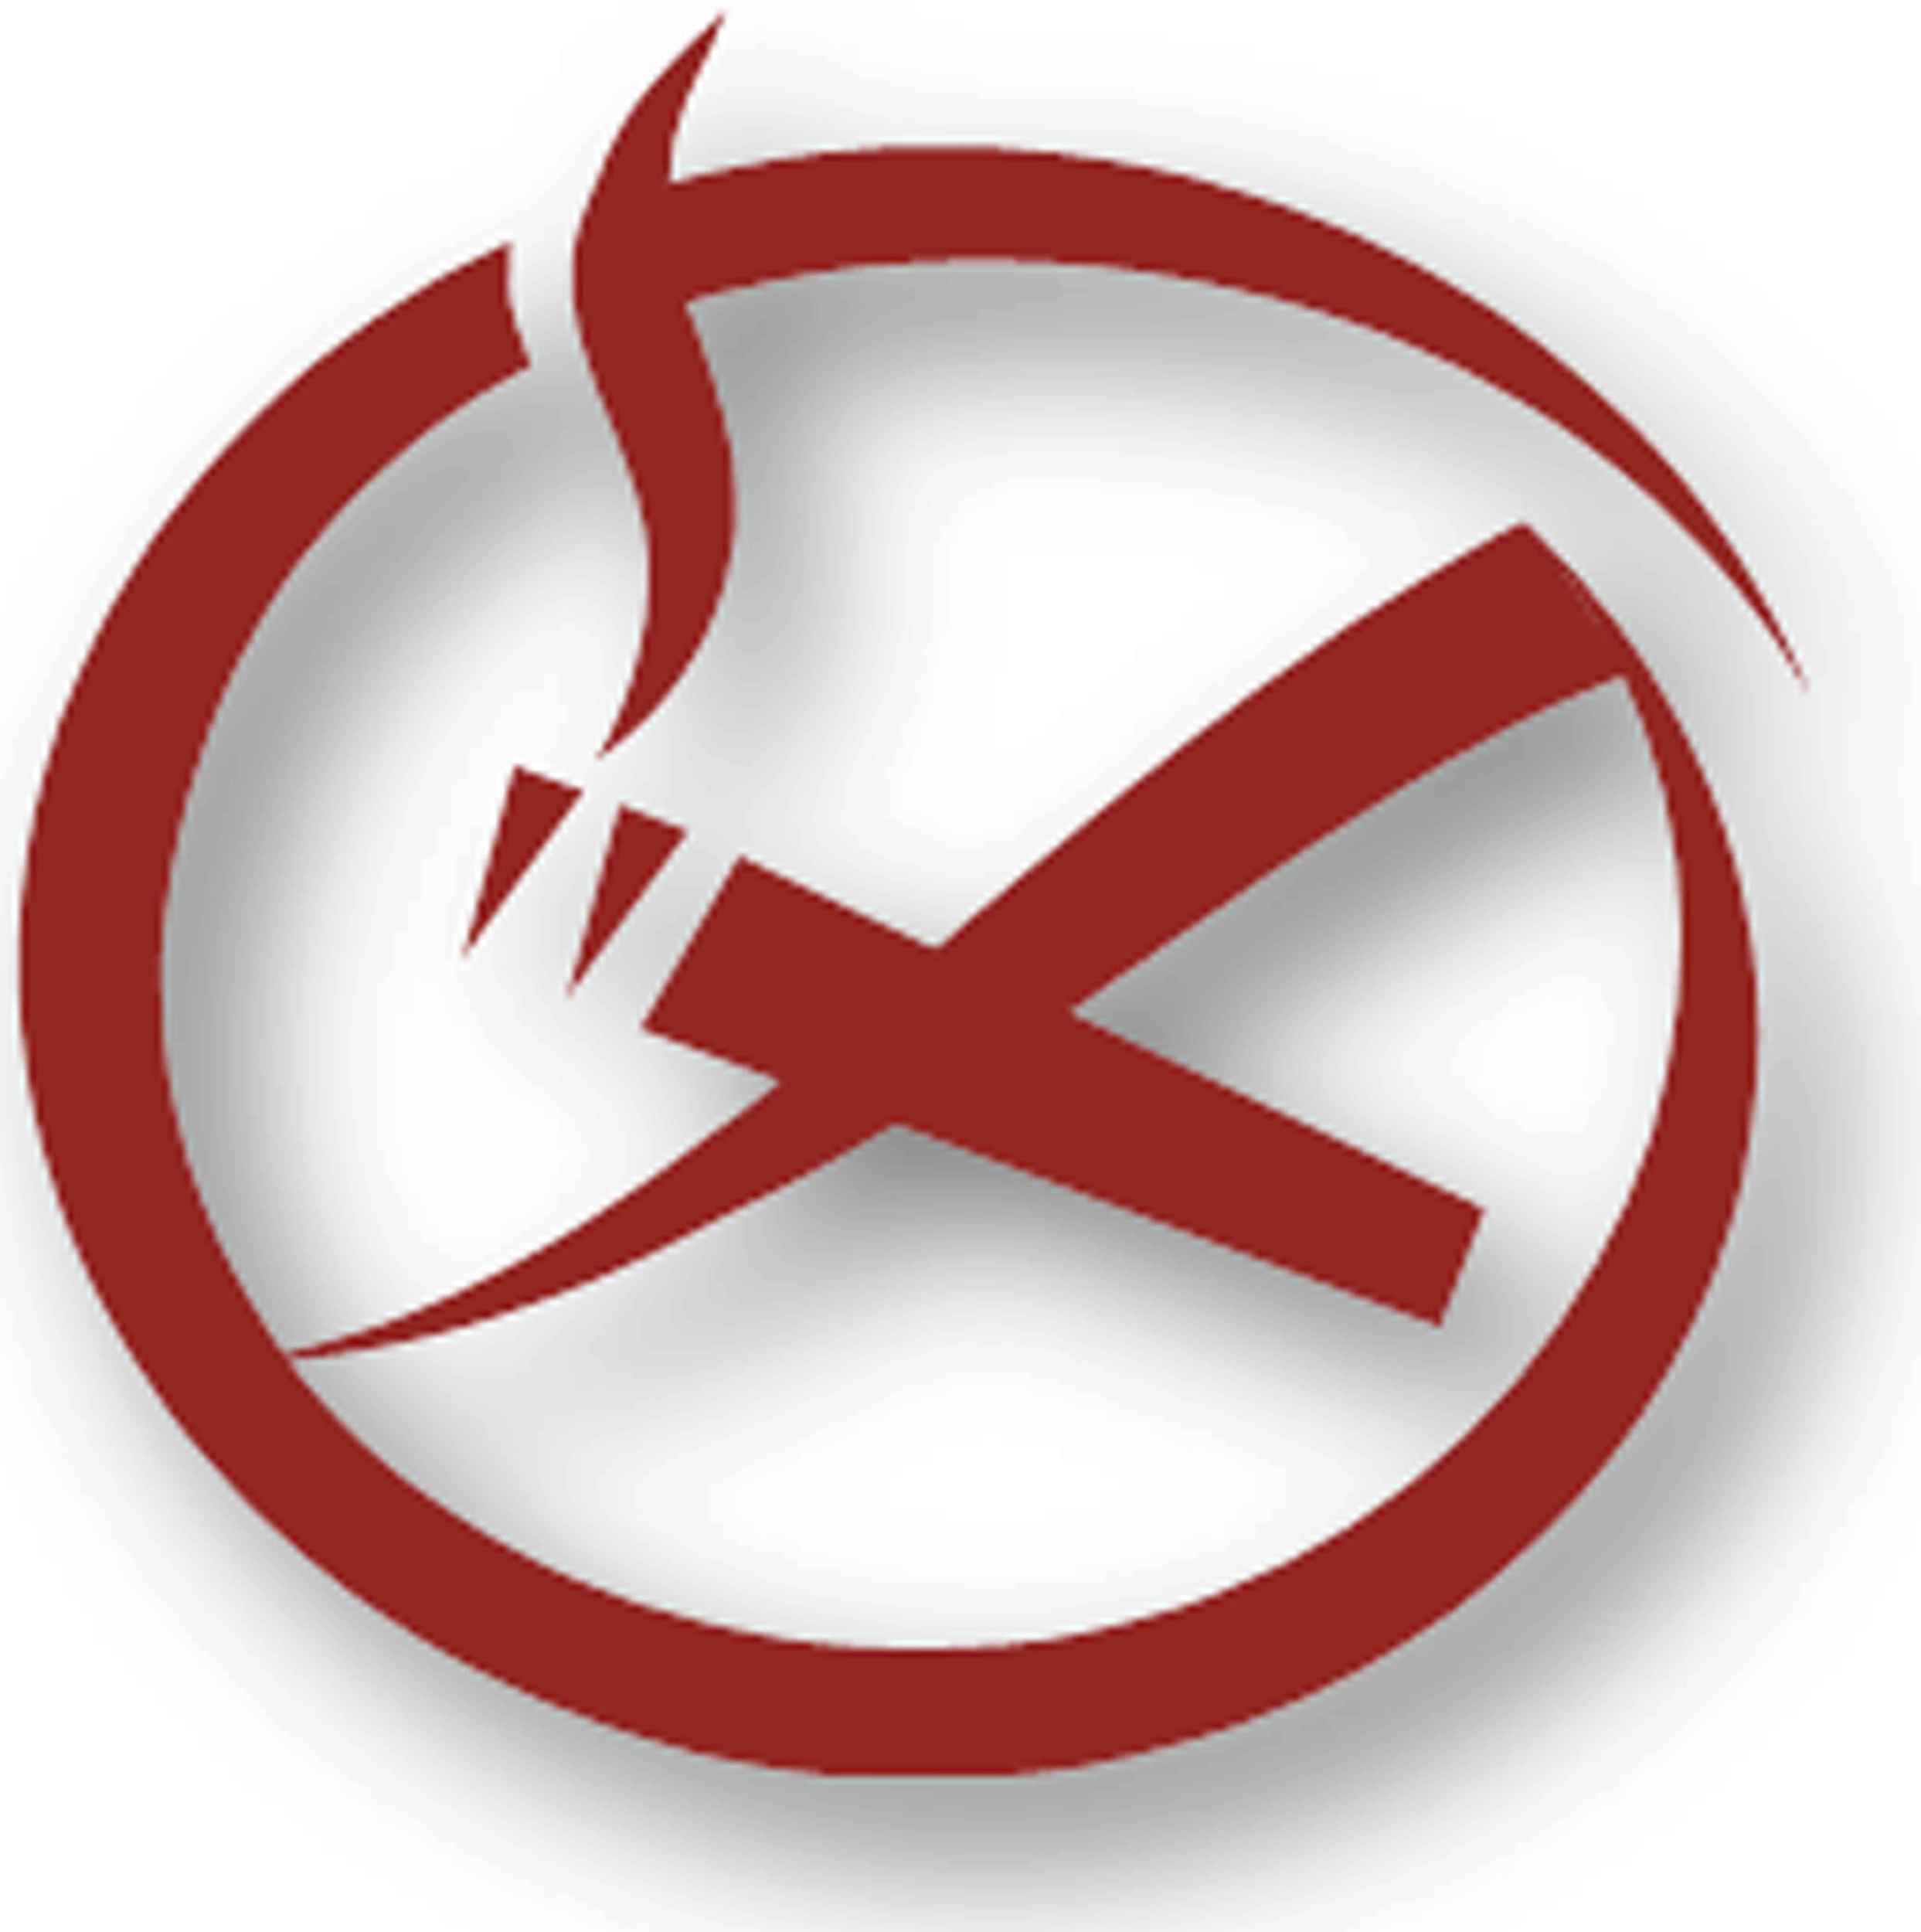 Smoking Logo lrg Print edited 1 2486w 2500h - Raucherentwöhnung in einer Sitzung